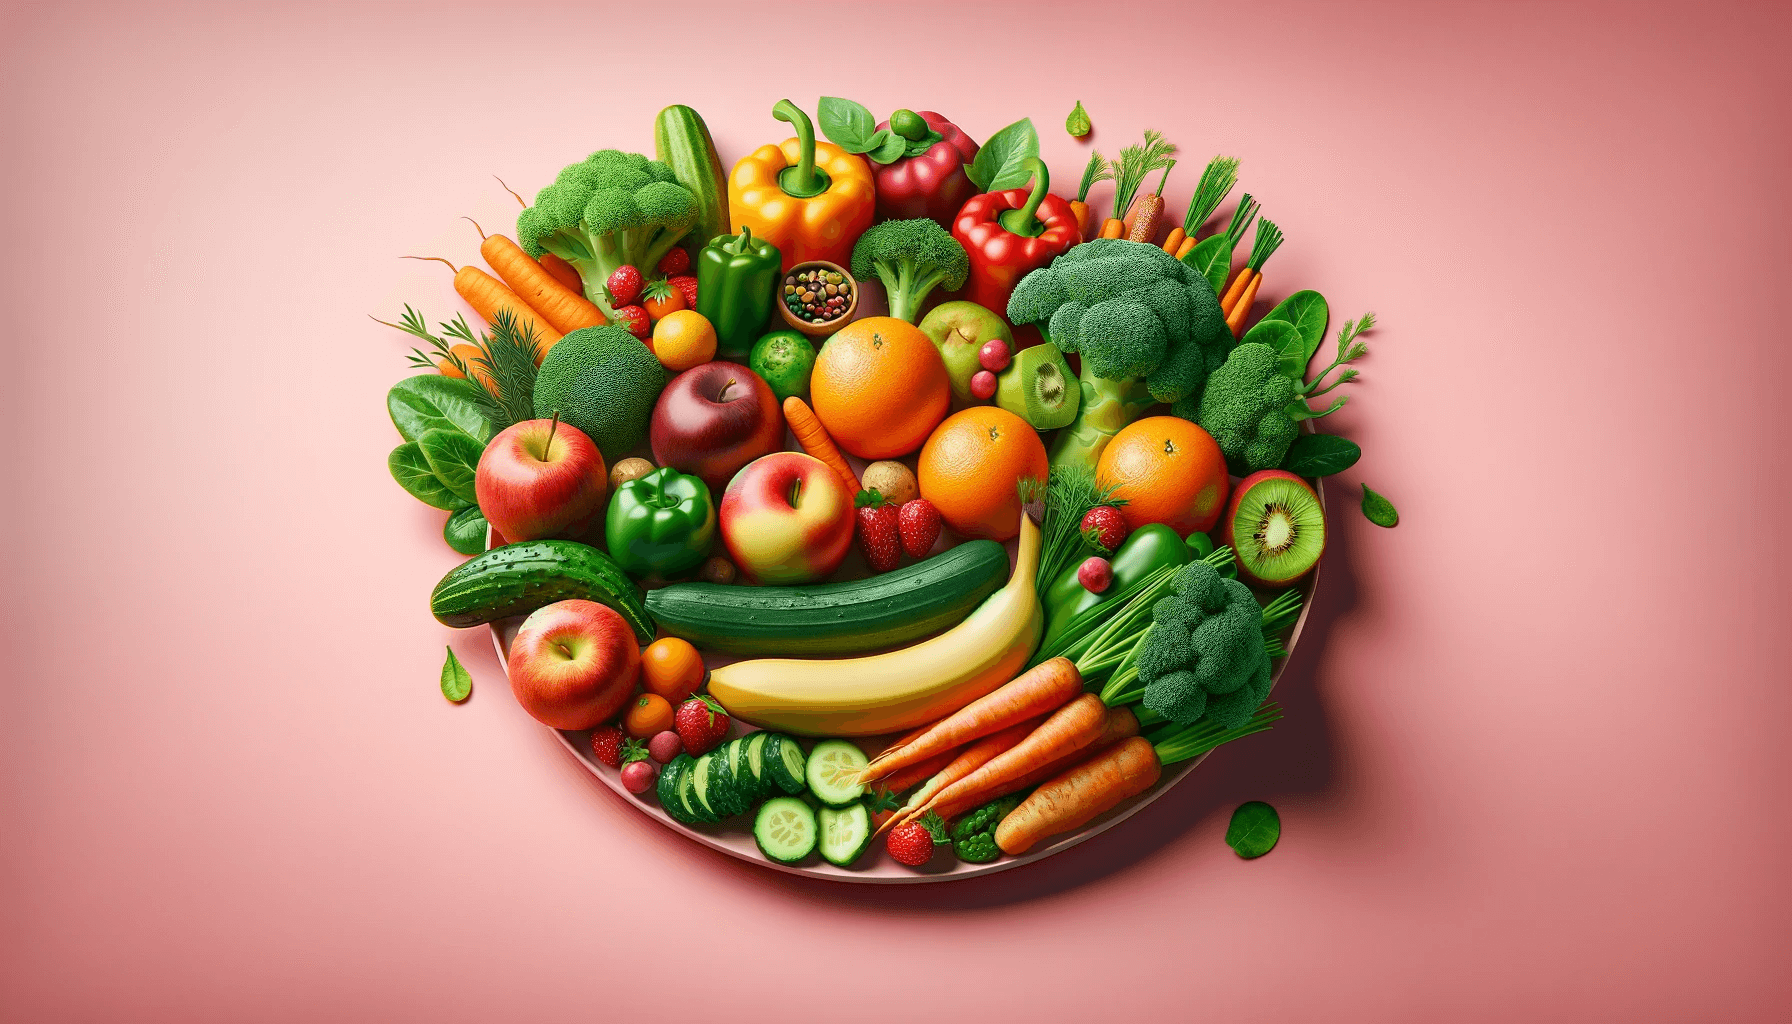 Здоровое питание: огурцы, салат, киви, овощи, фрукты в тарелке на розовом фоне